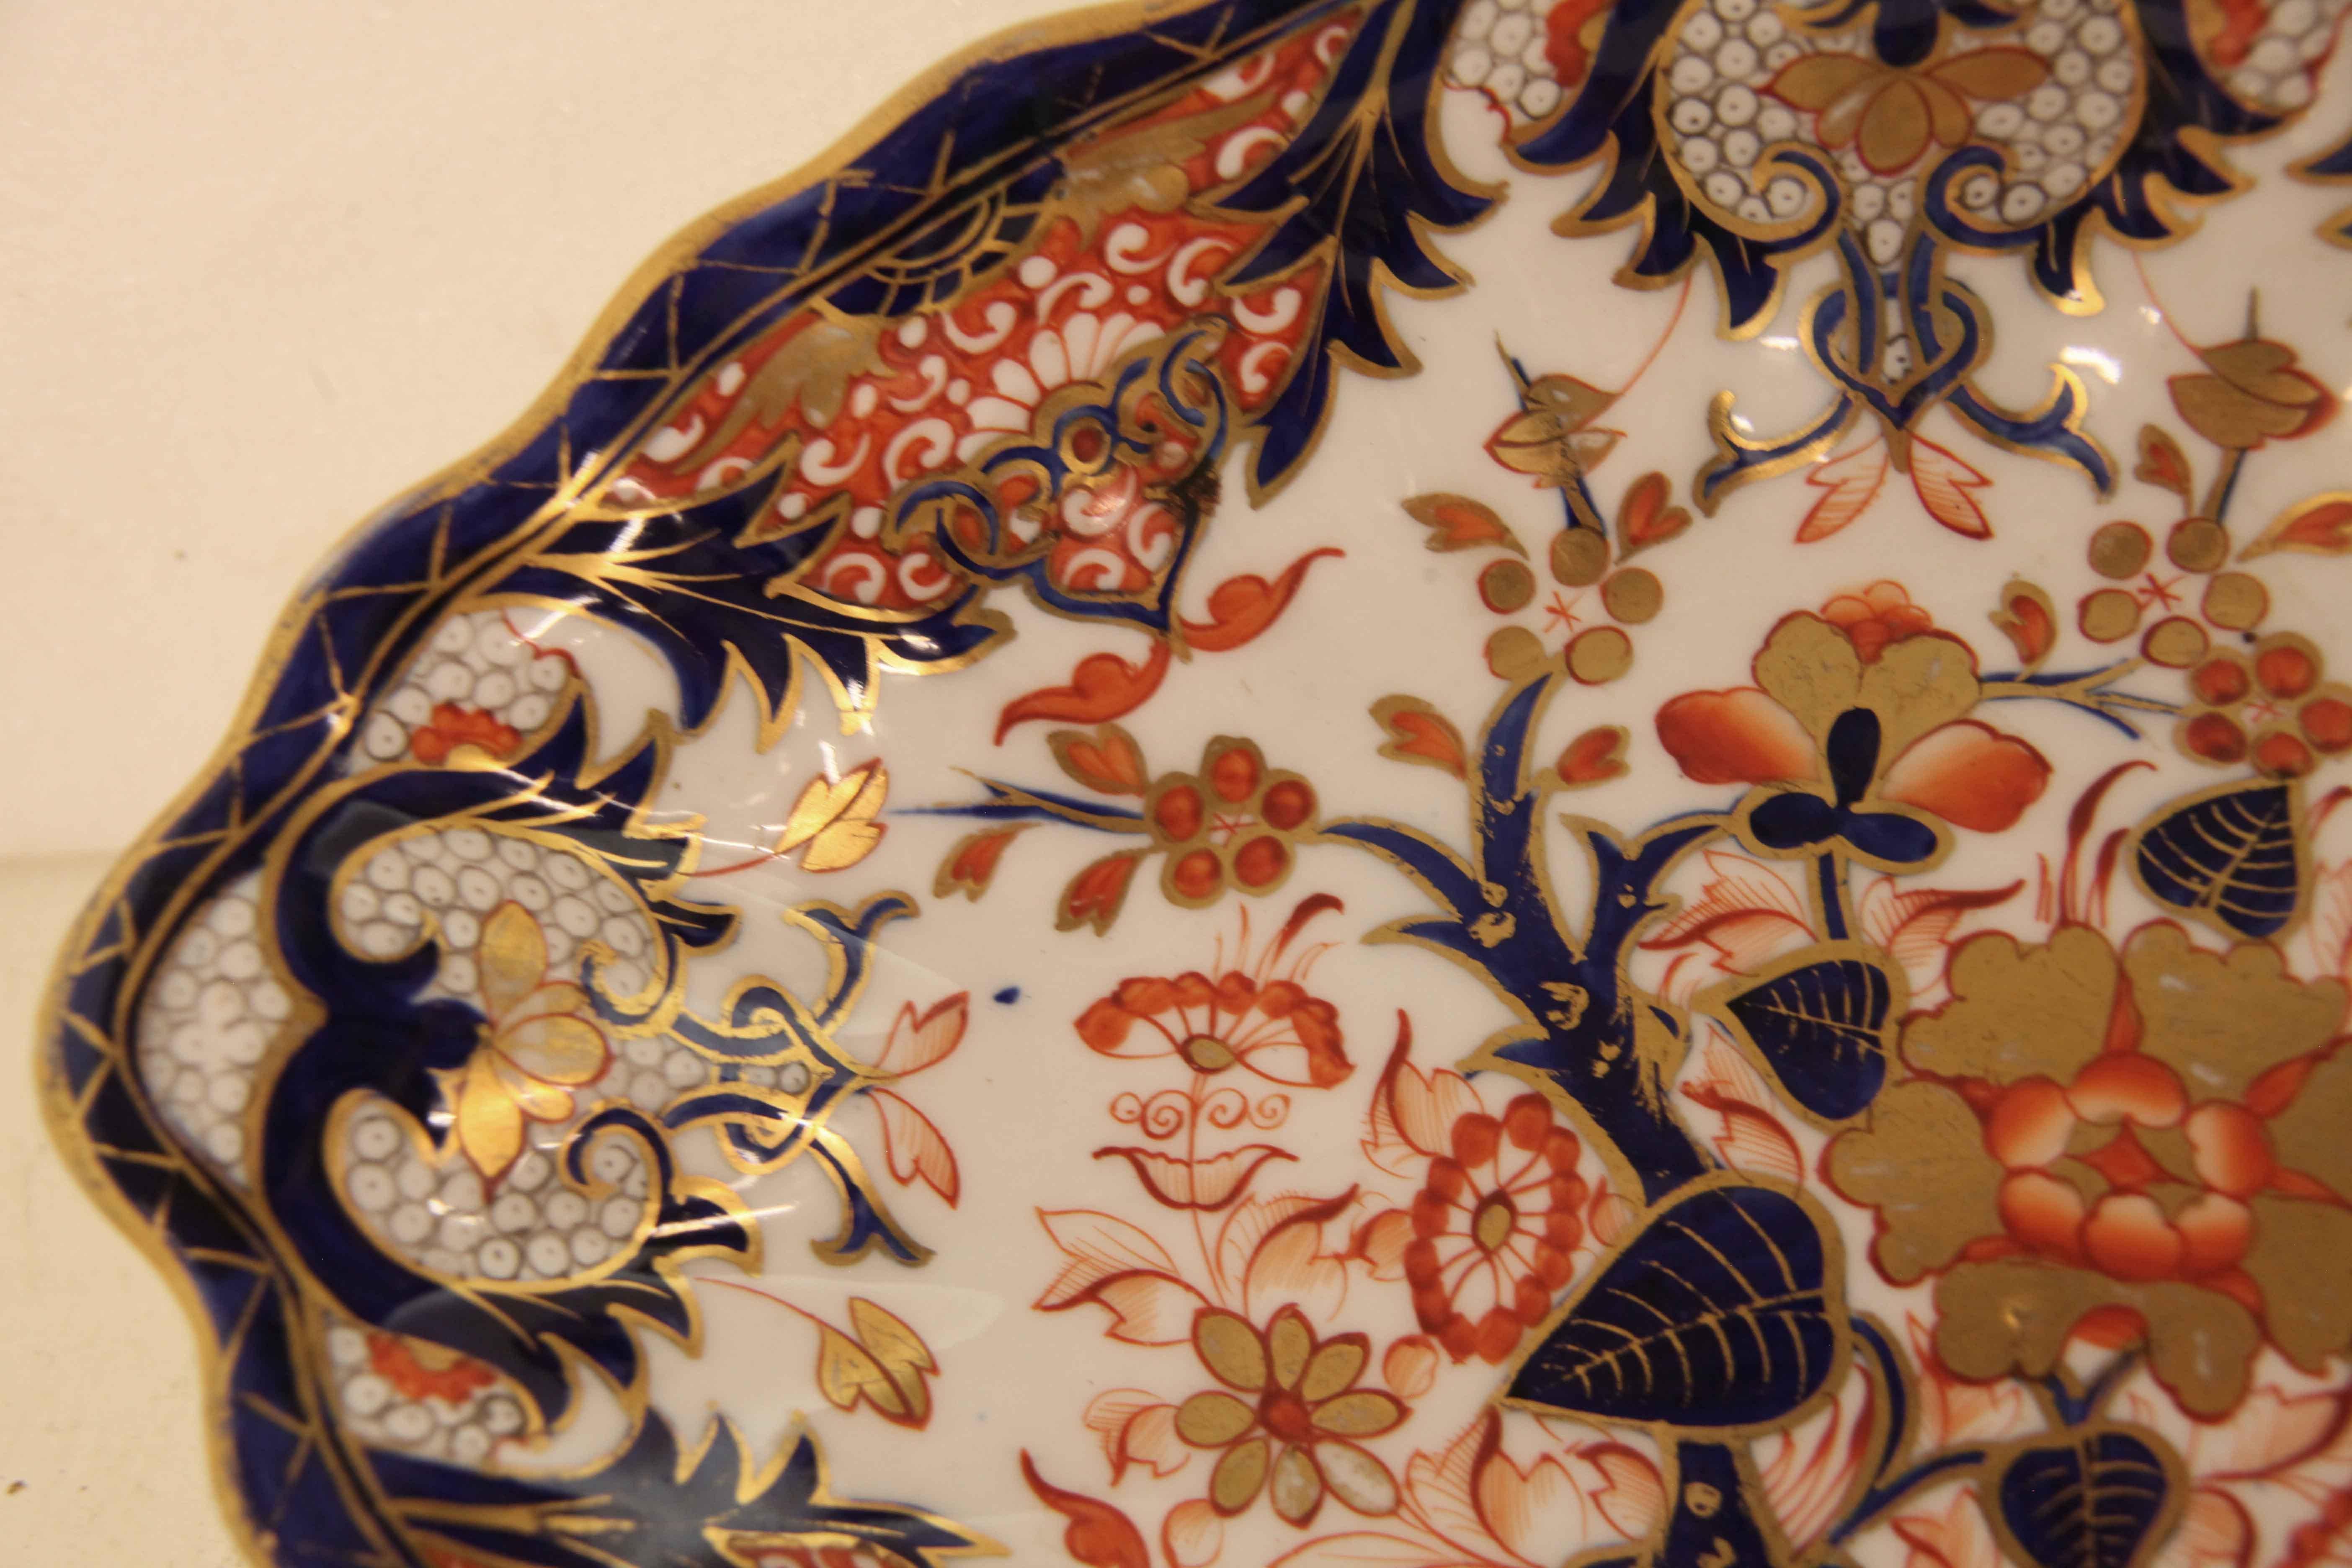 Ovale Schale English Derby,  der Rand und die Randeinfassung haben eine gewellte Form. Diese Schale zeigt eine Vielzahl von floralen und skurrilen Motiven in den typischen Derby-Farben oder tiefem Kobalt, Lachs und Orange auf weißem Grund.  Mit der